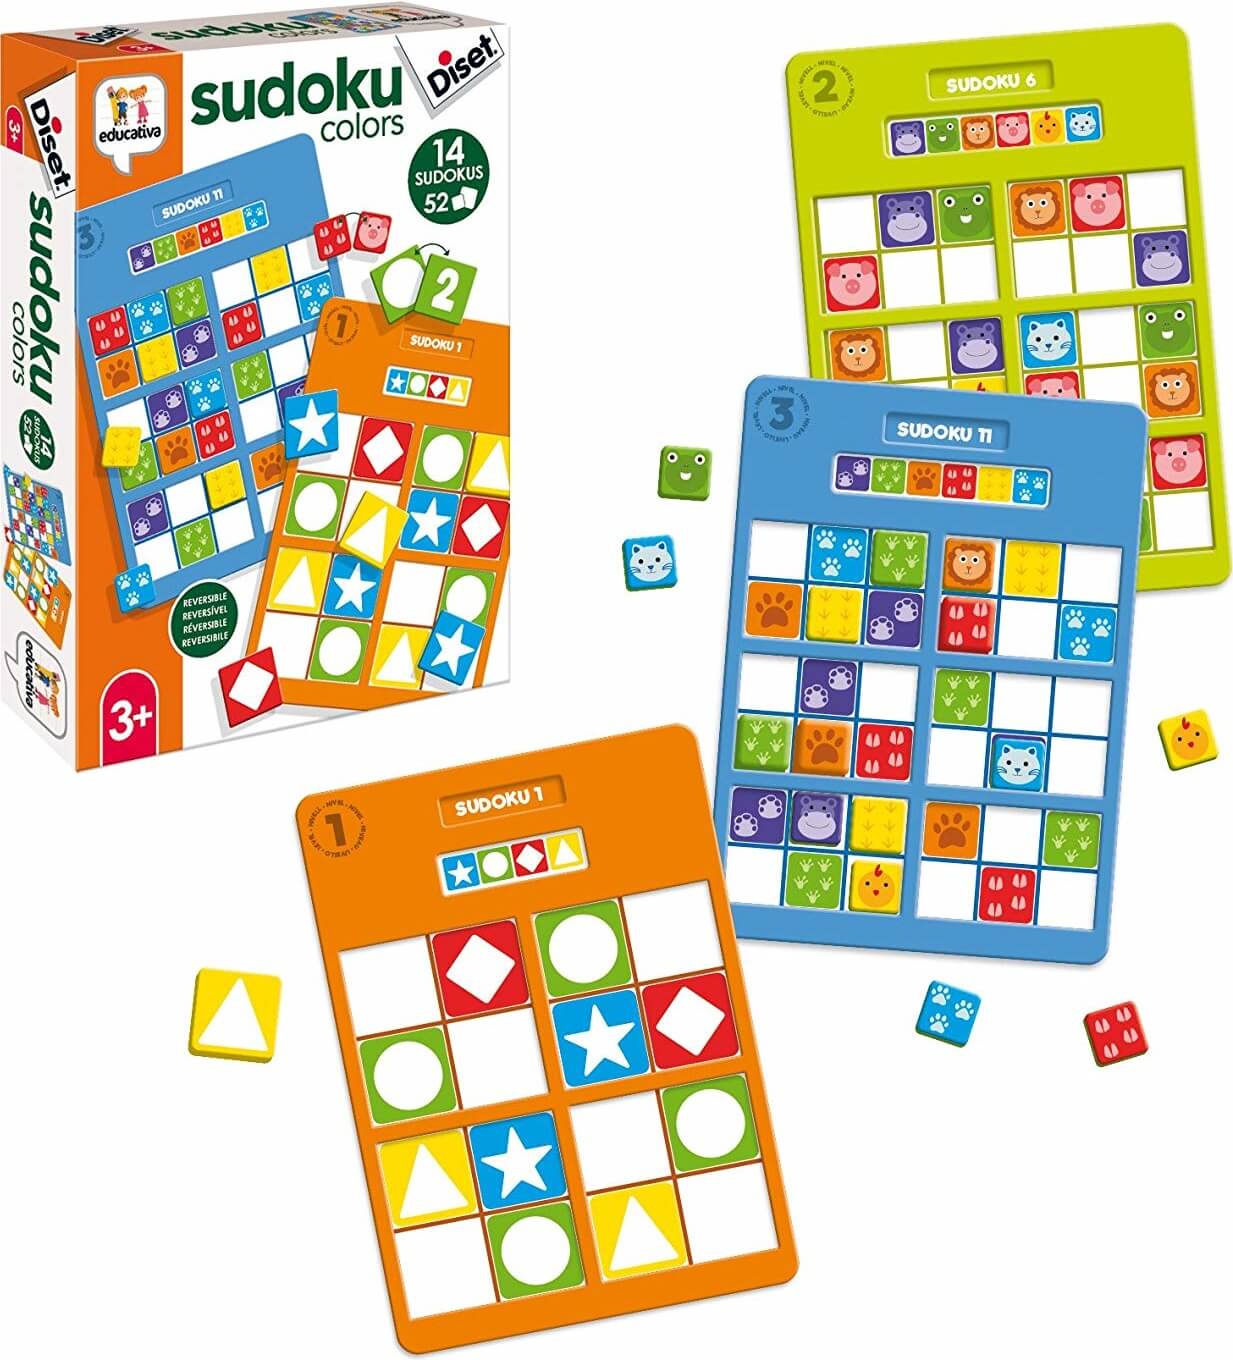 Sudoku Colors ( Diset 68969 ) imagen a